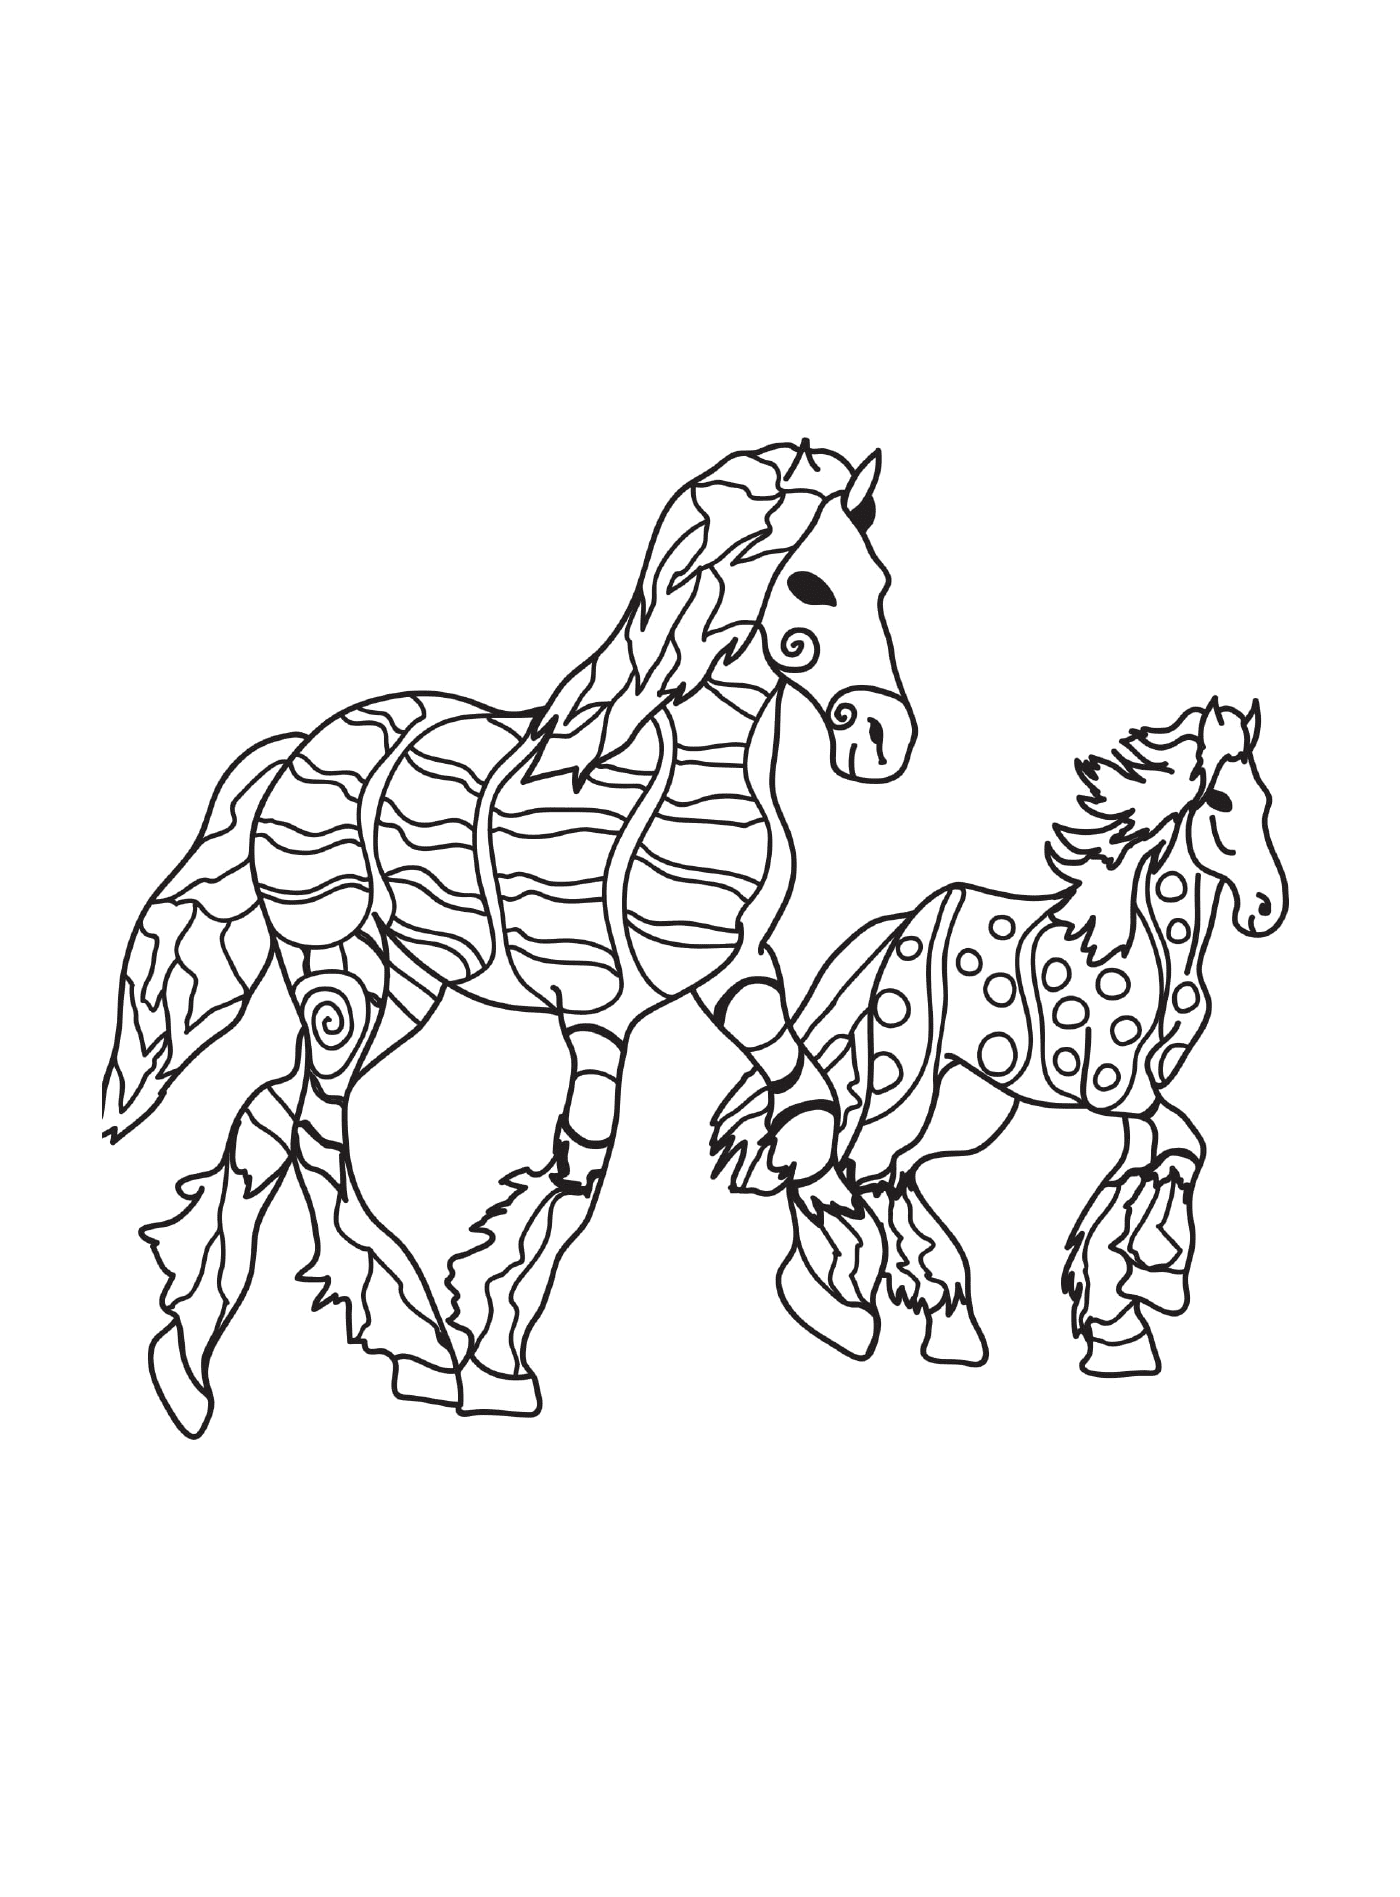  Пара лошадей, стоящих в грязи 